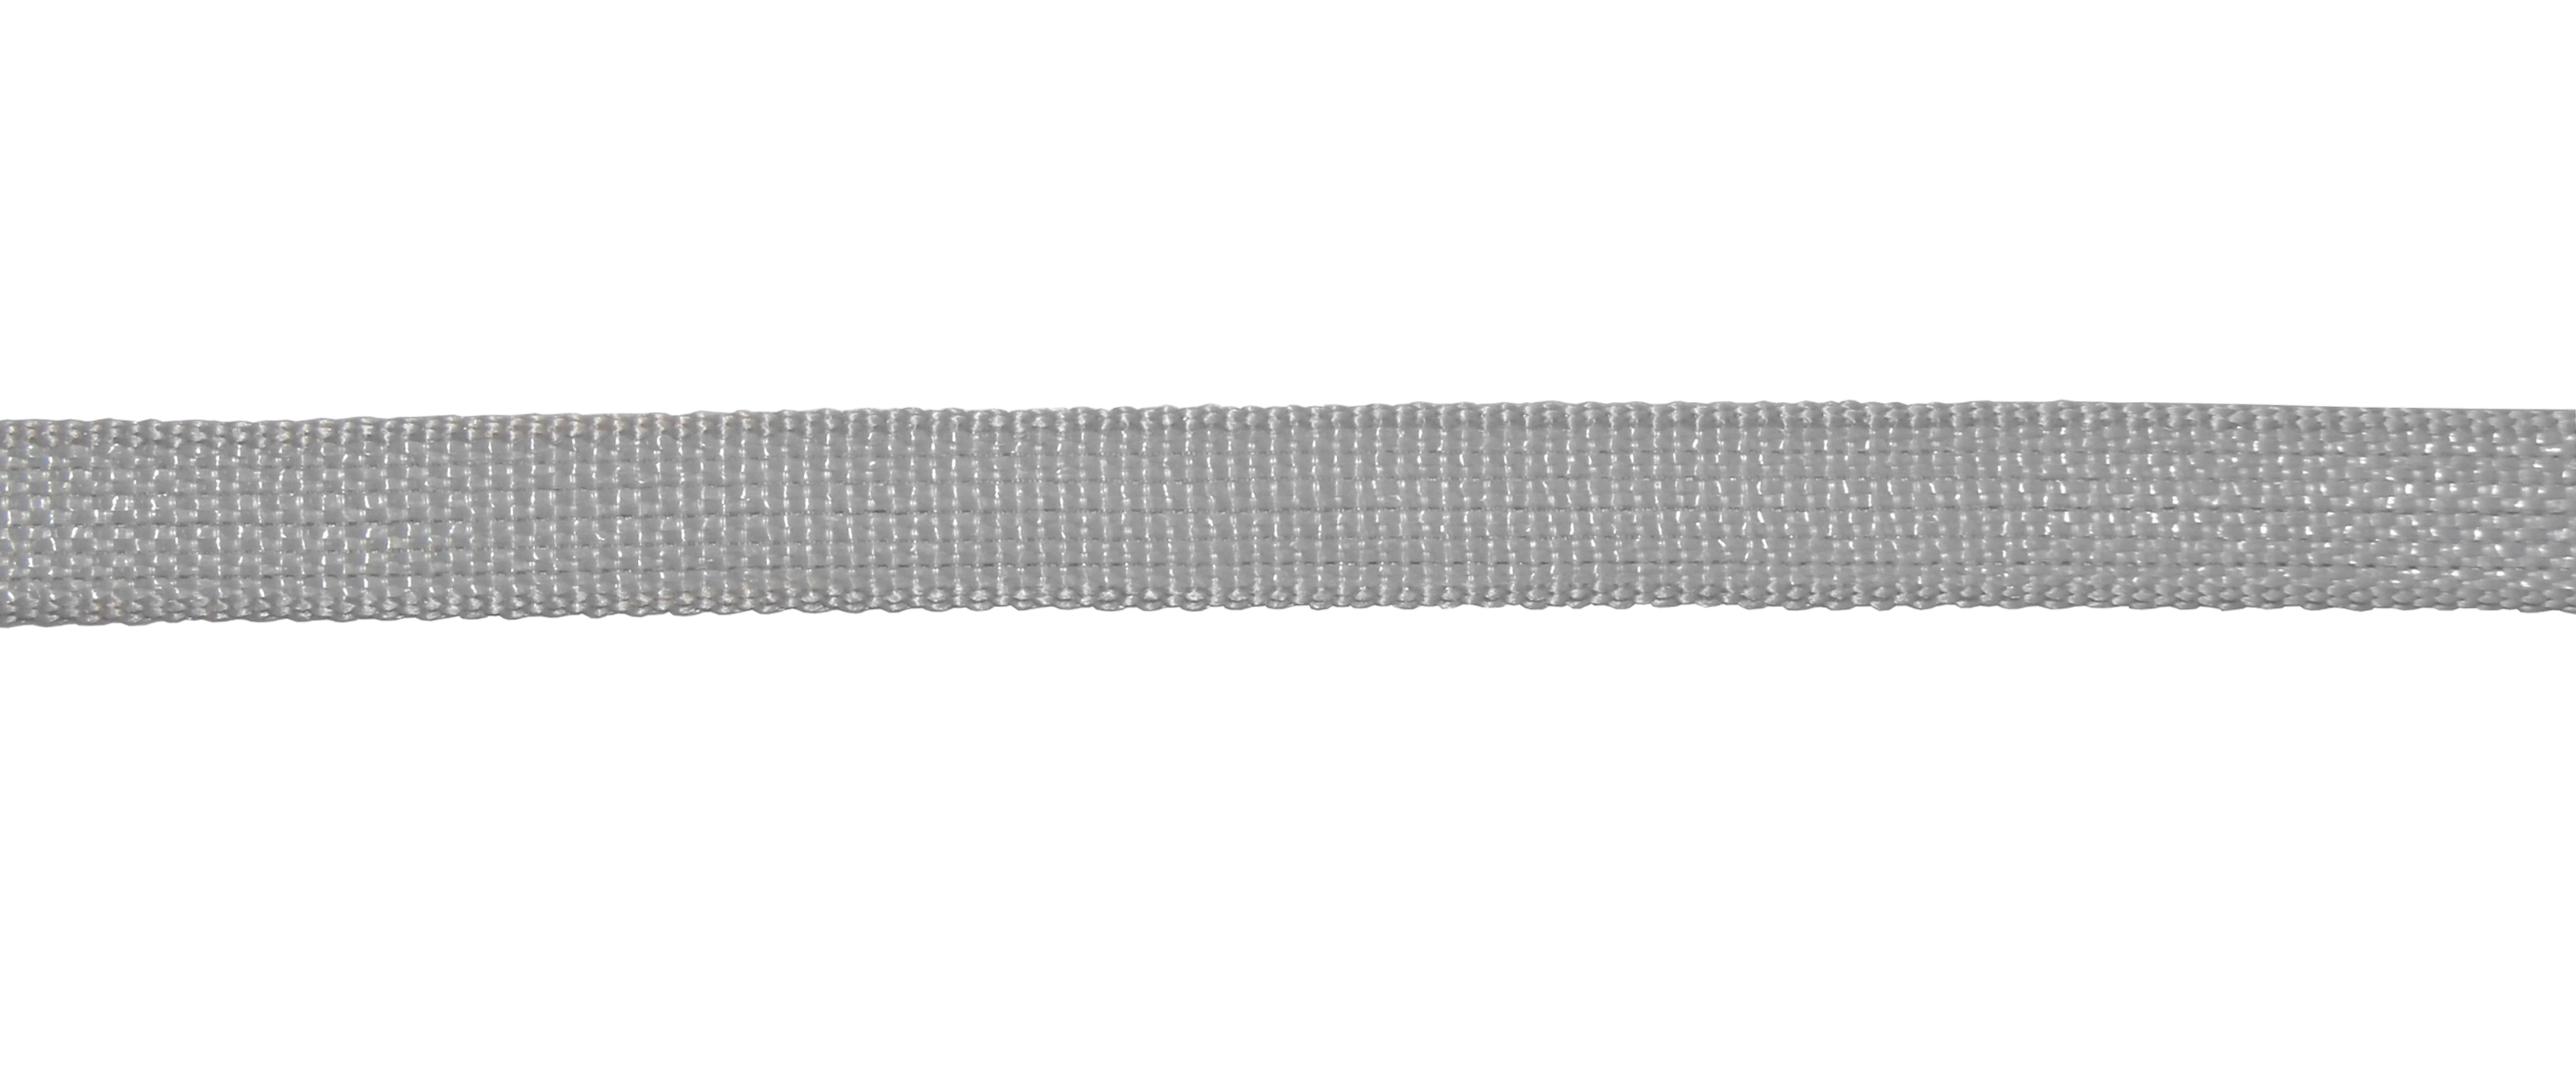 Cintino tapparella 50 mt grigio corda sostituzione avvolgibile persiane polipropilene